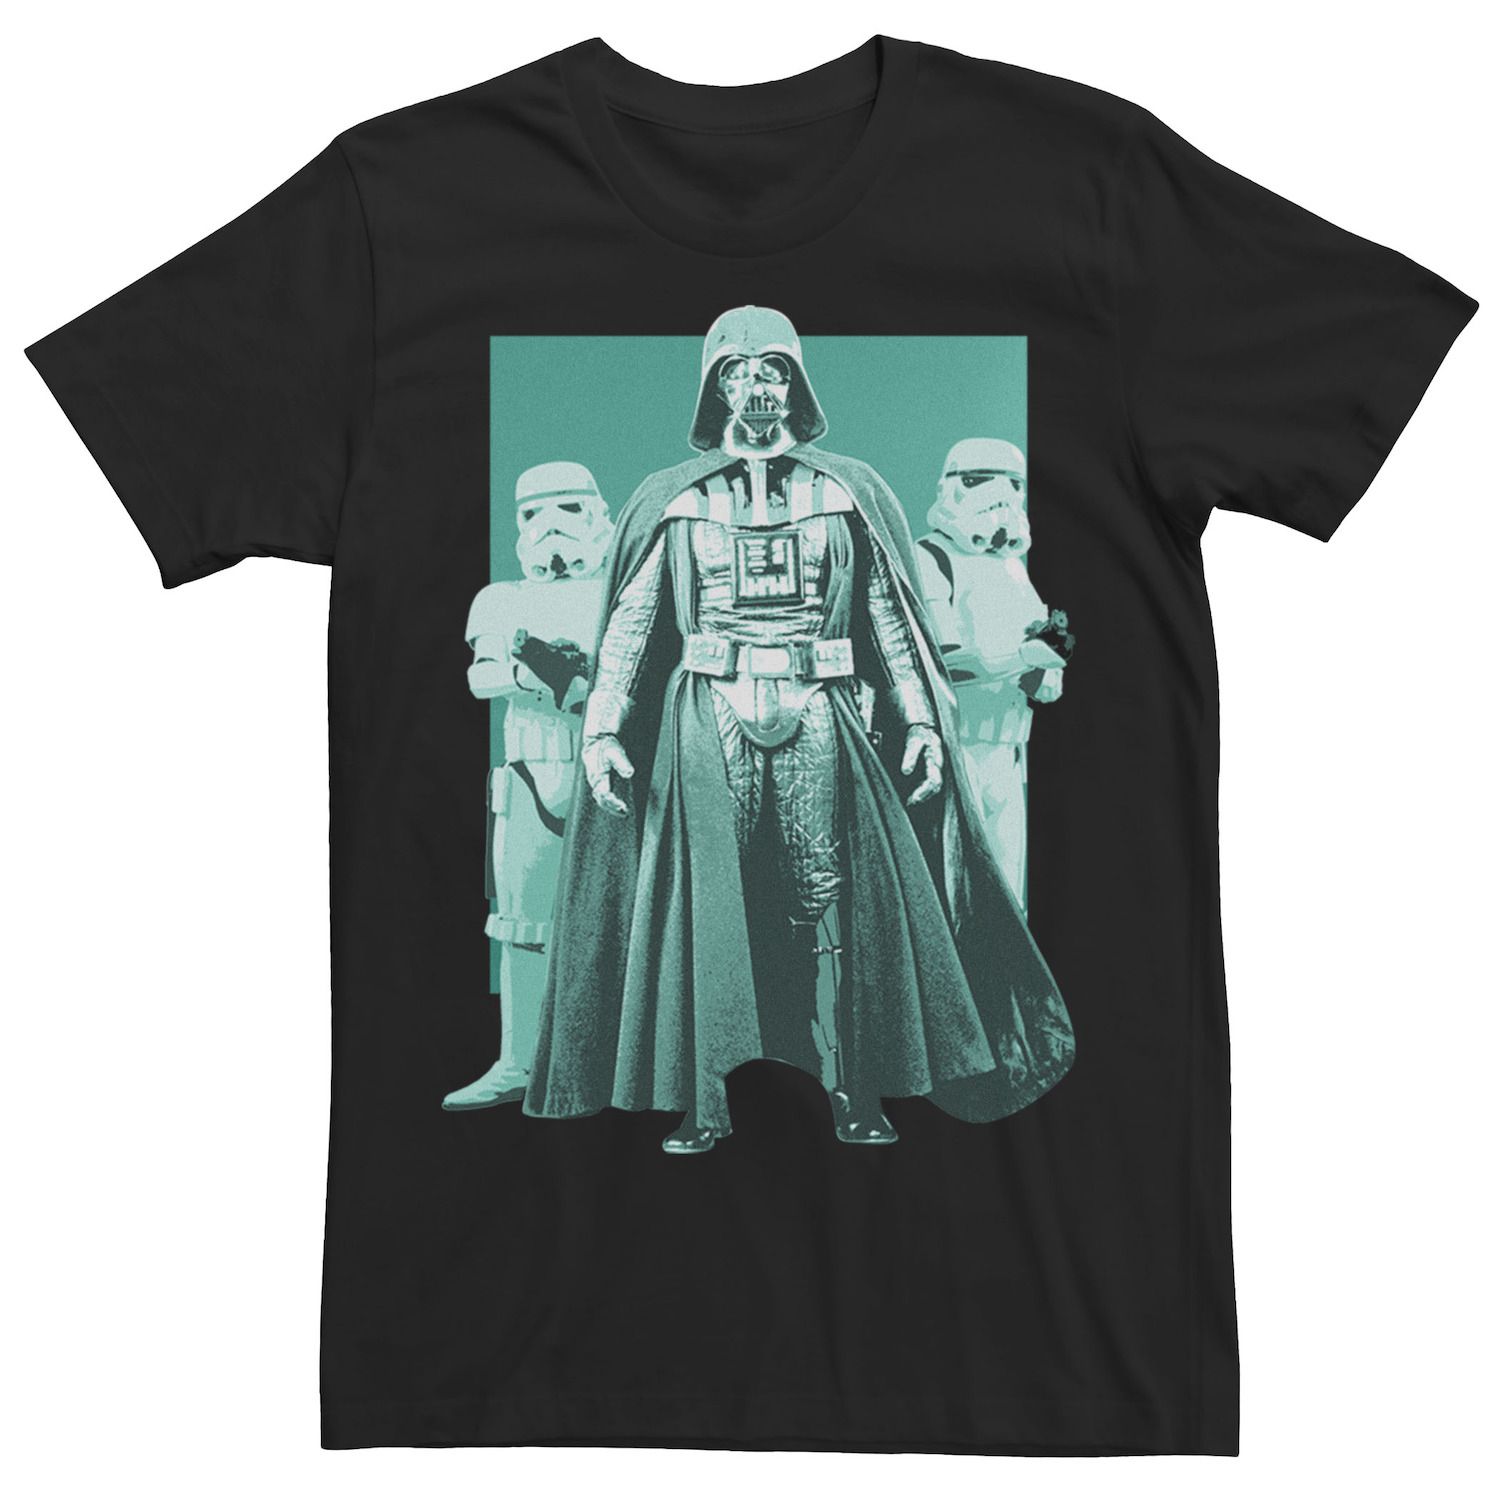 Мужская футболка с портретом Дарта Вейдера и штурмовиков Star Wars